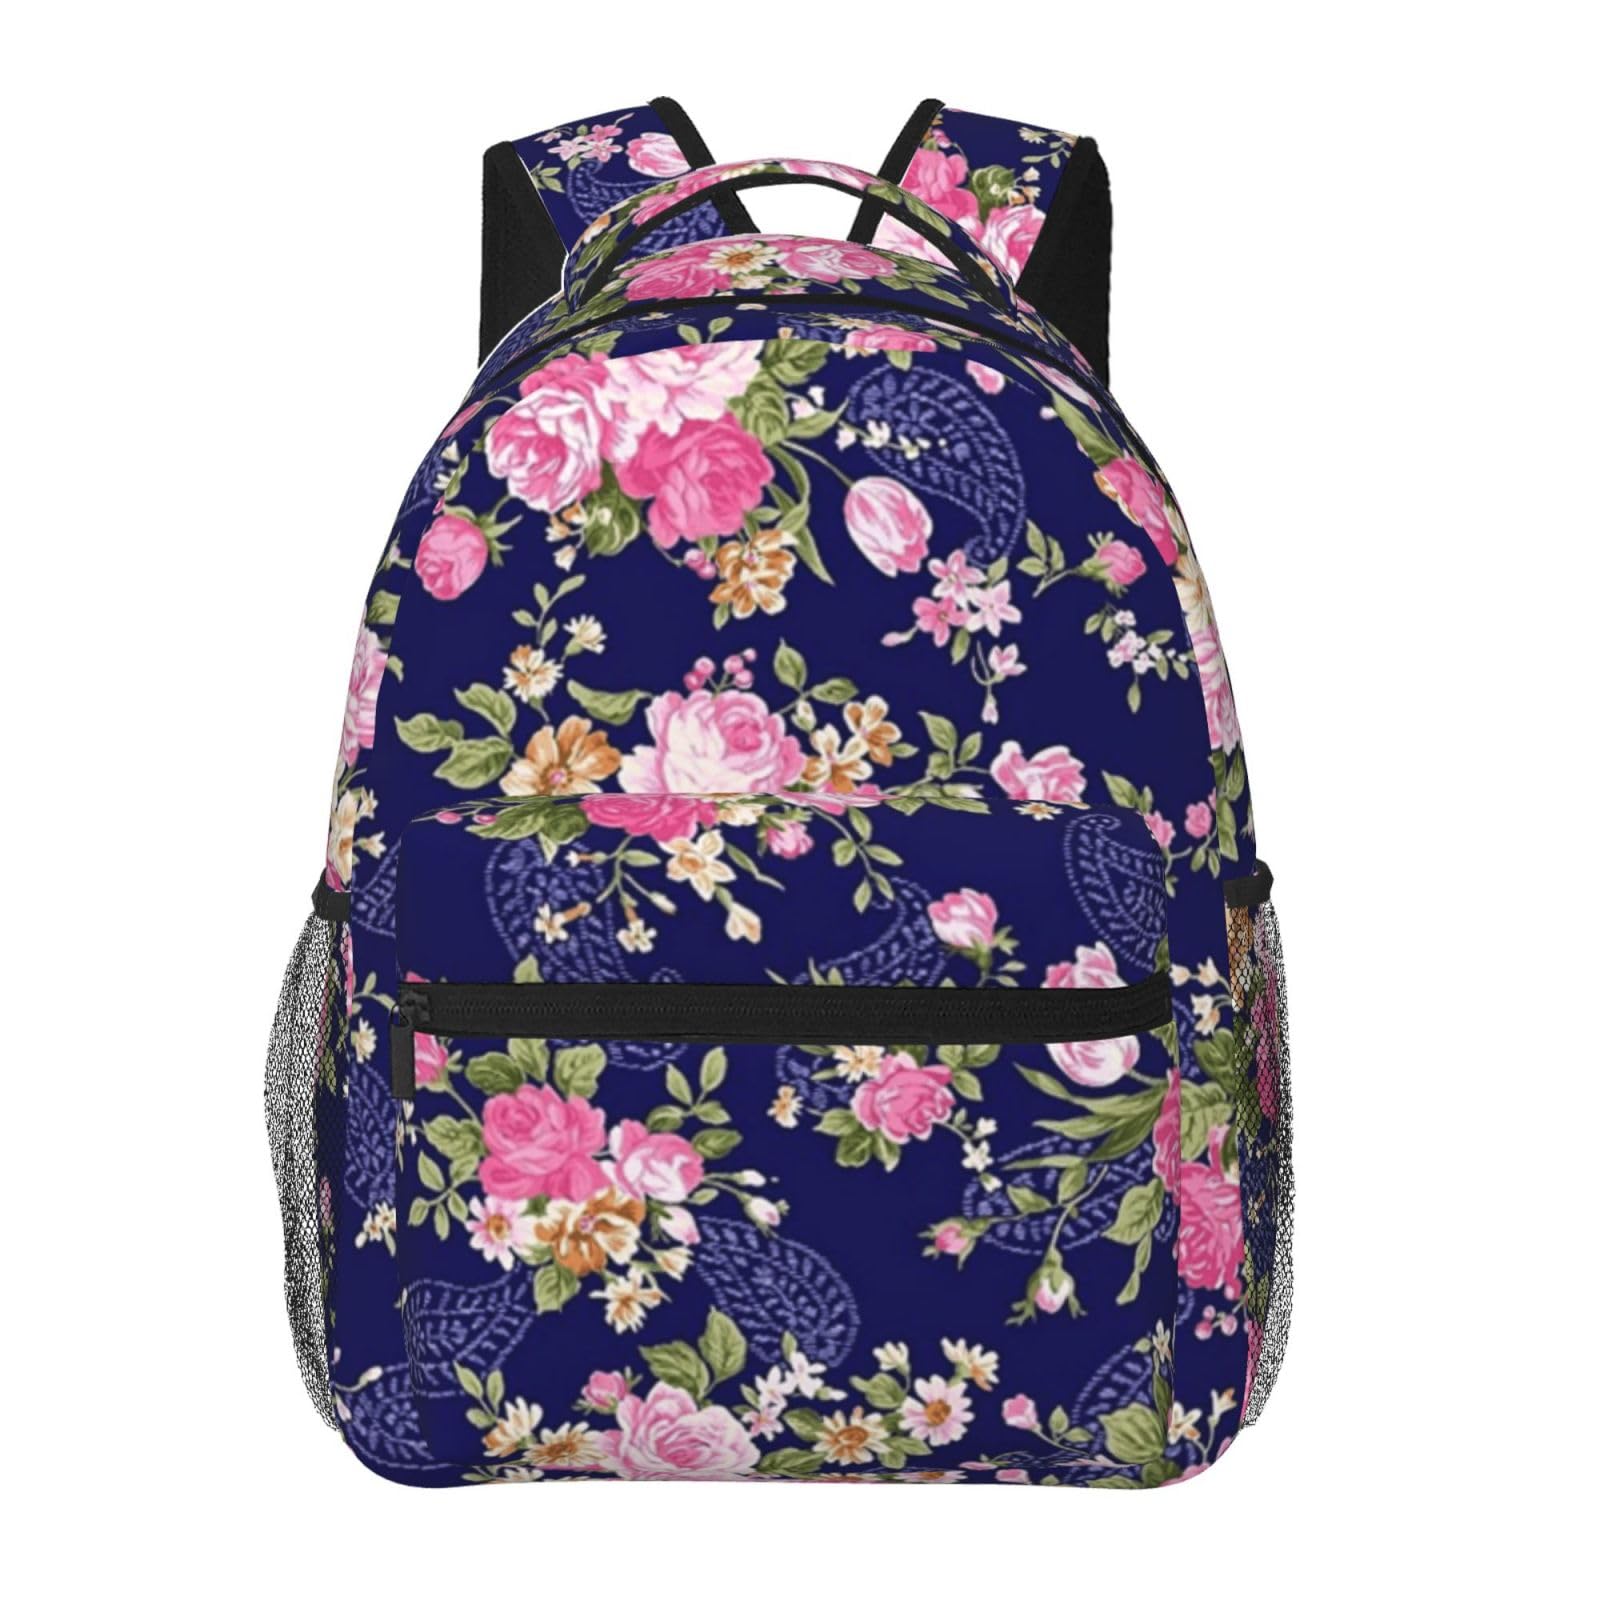 送料無料Navy Blue Base Floral Printed Laptop Backpack Fashion Lightweight Ergonomic Backpacks Casual Travel Daypack For W